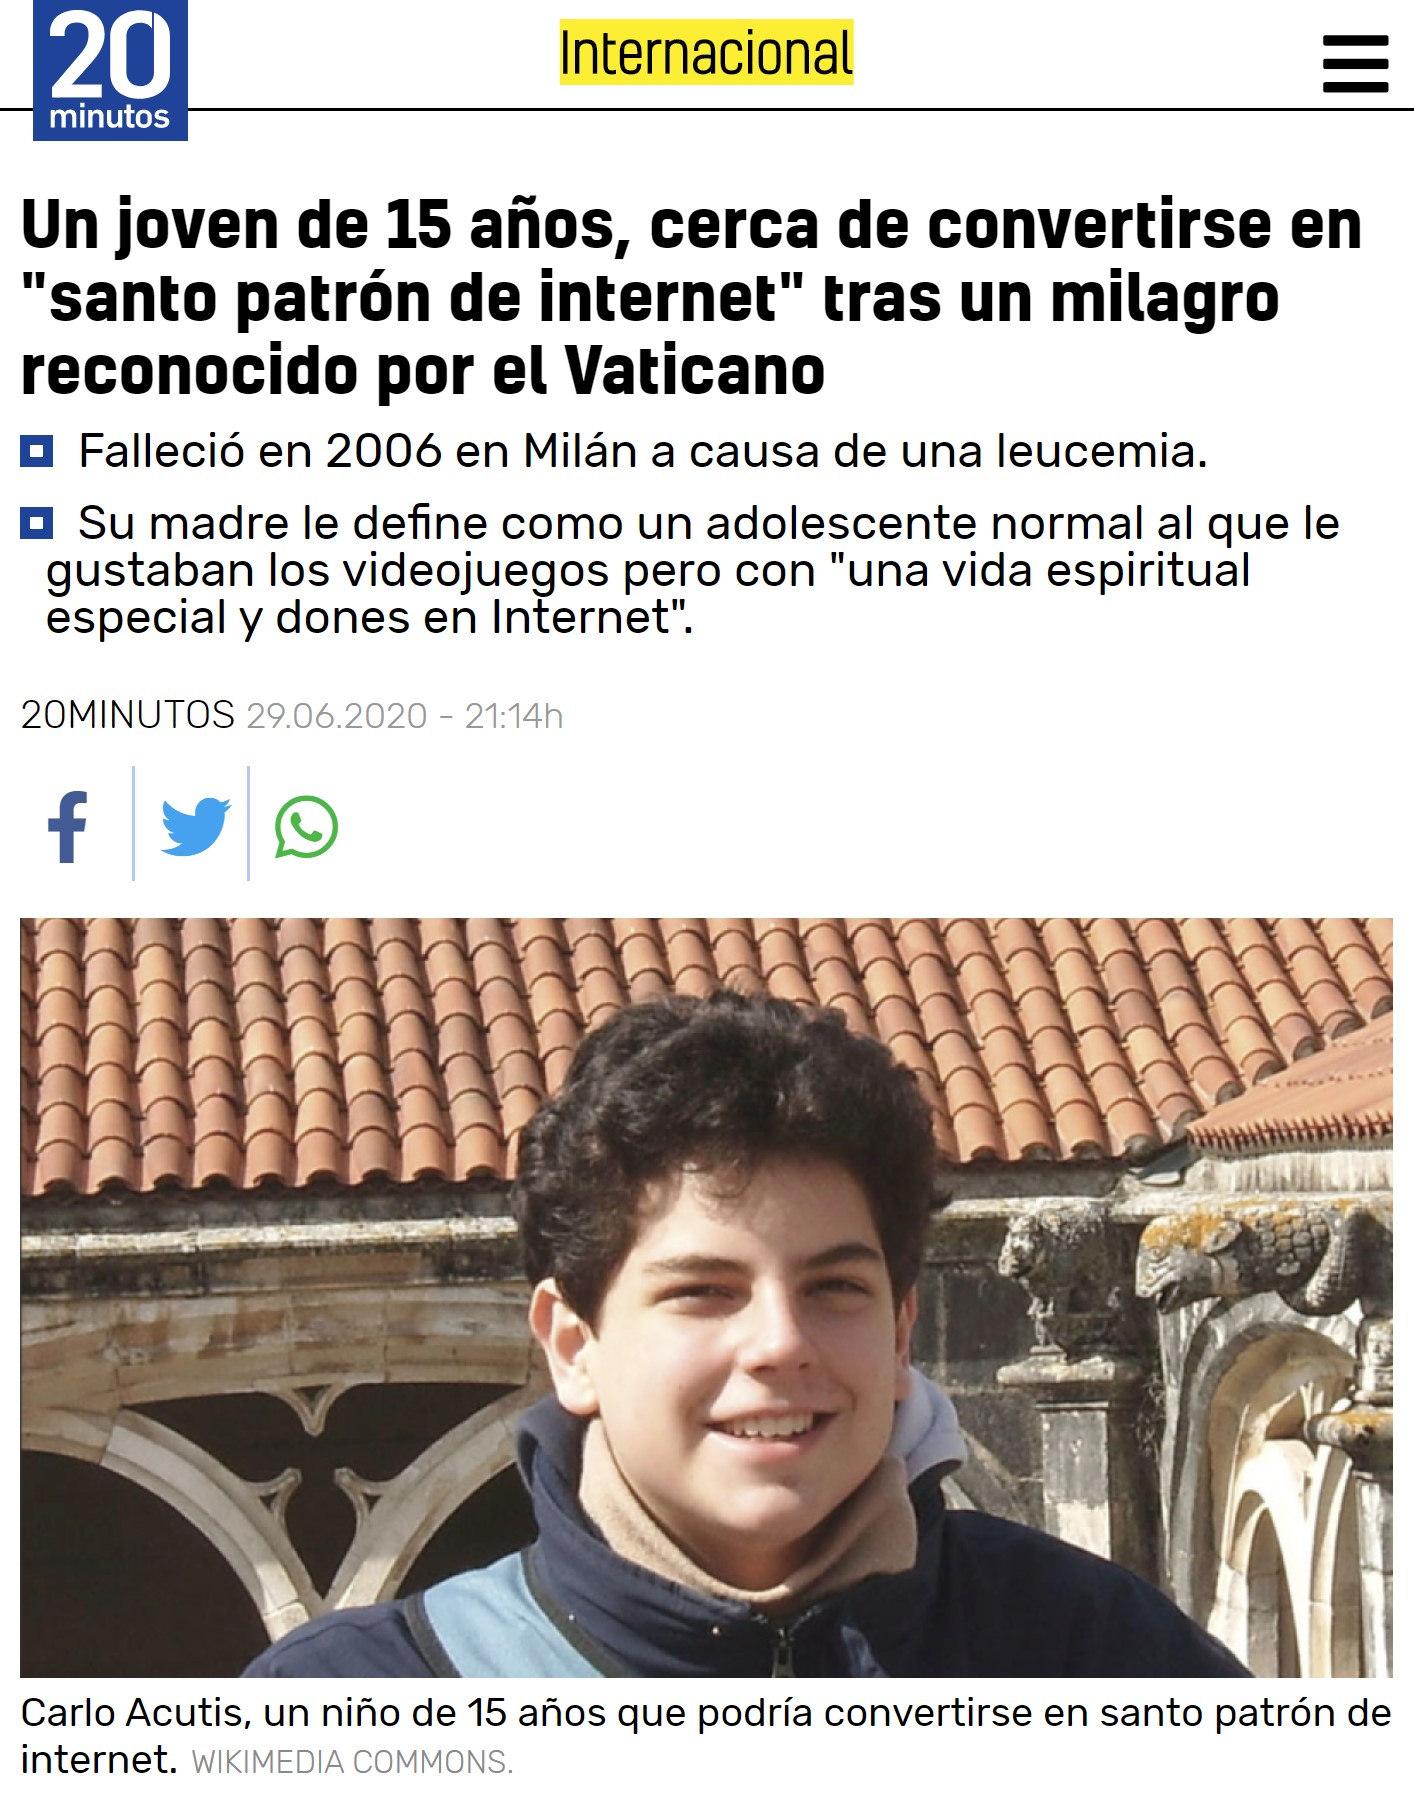 El niño que "curó la leucemia" a otro niño, es convertido en "Santo patrón de internet" después de que el Vaticano haya reconocido su "milagro"